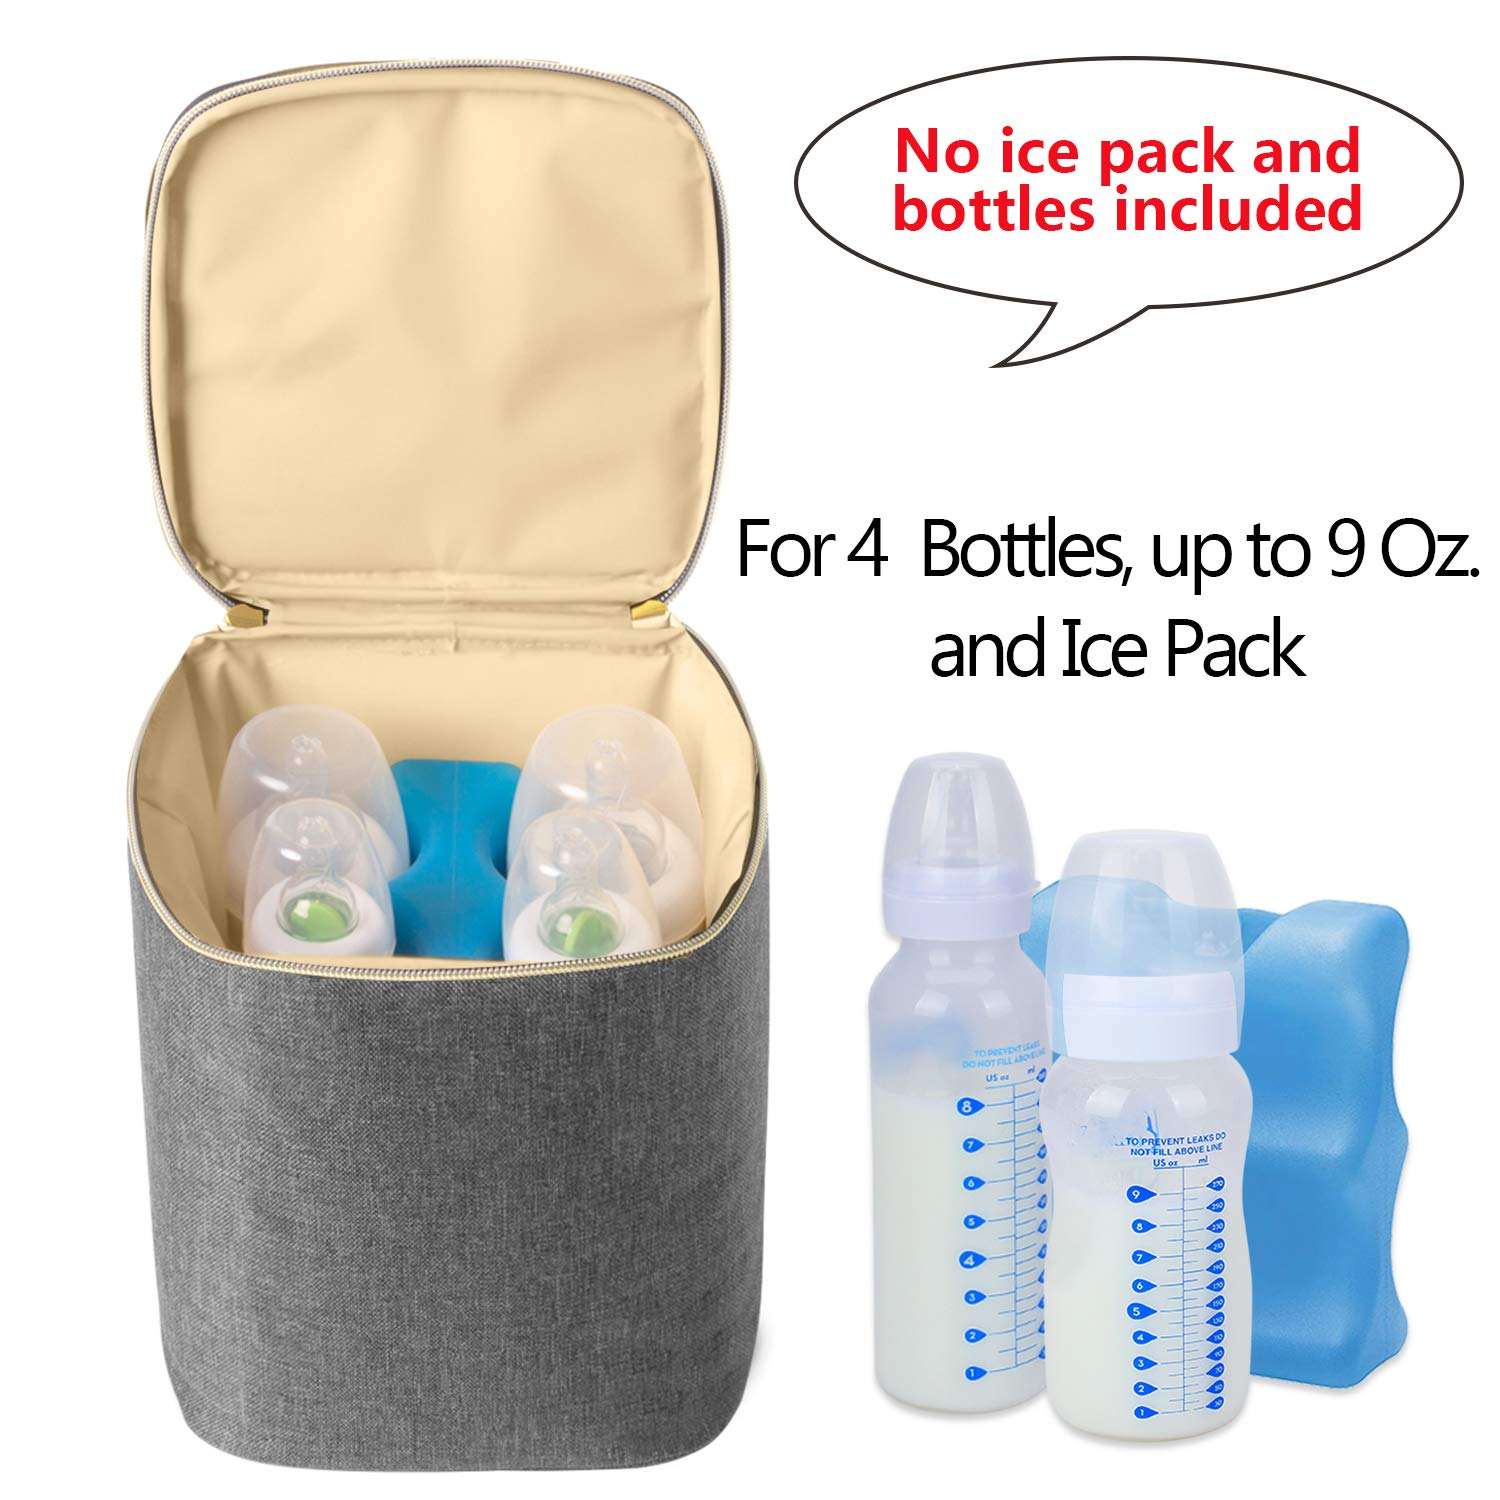 再利用可能な母乳クーラーランチバッグ 漏れ防止哺乳瓶 断熱バッグ 最大4個の大型9オンスボトル用